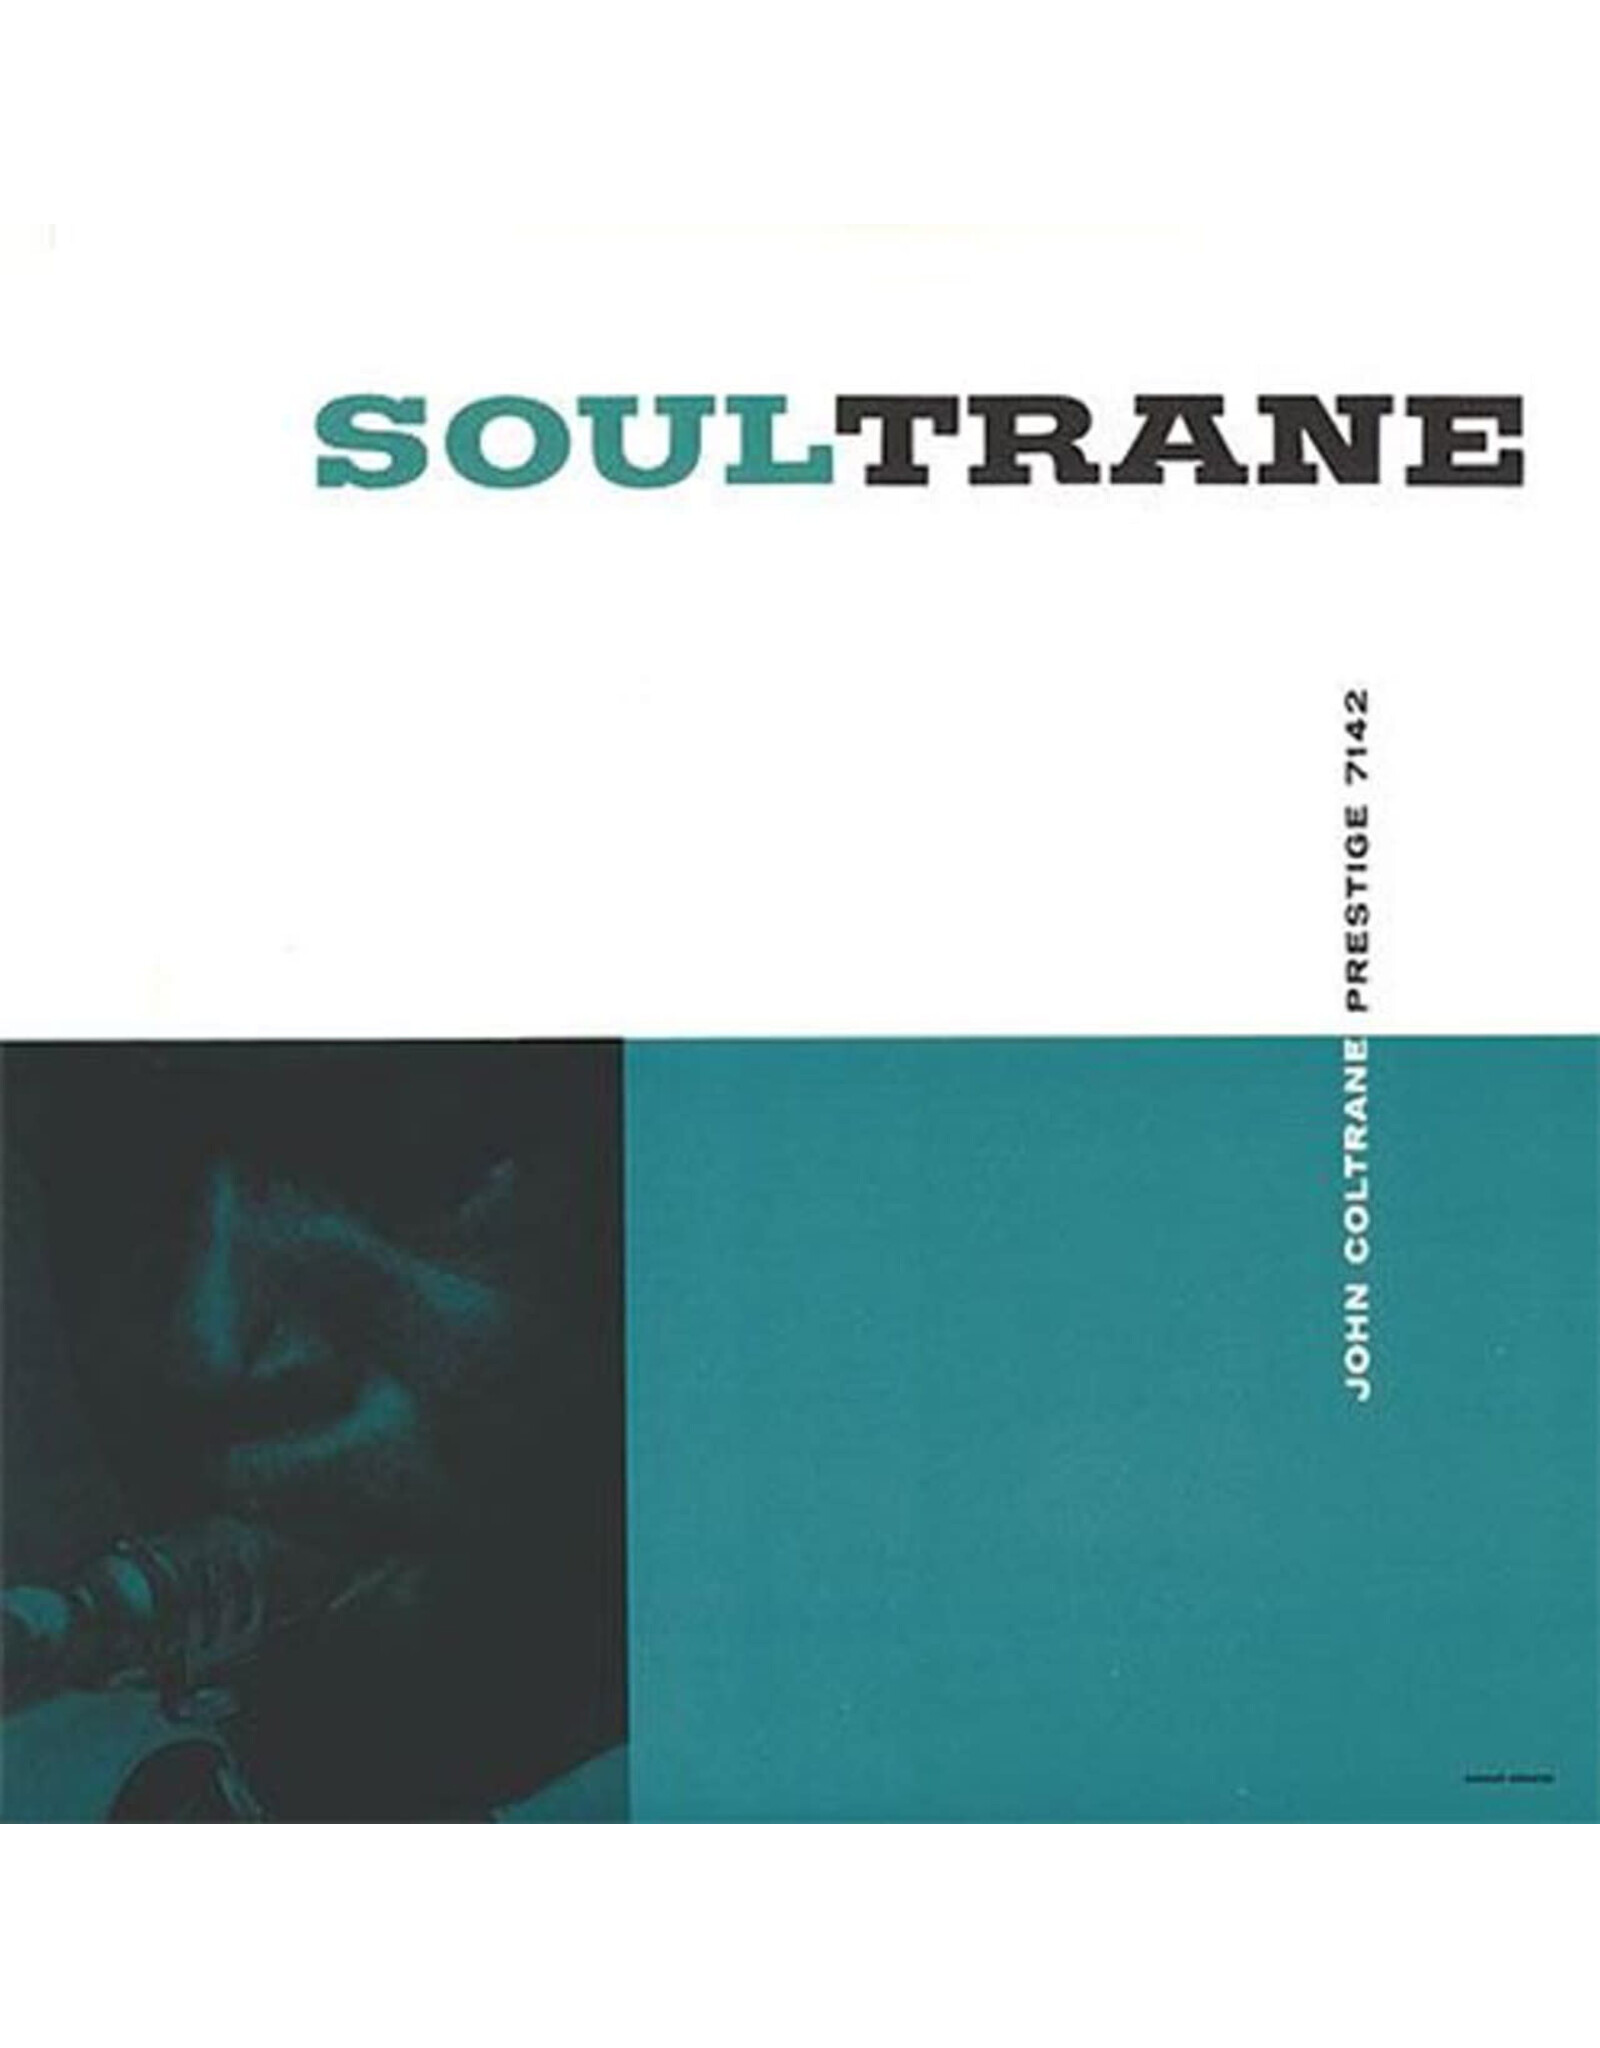 Analogue Productions Coltrane, John: Soultrane (Mono) LP